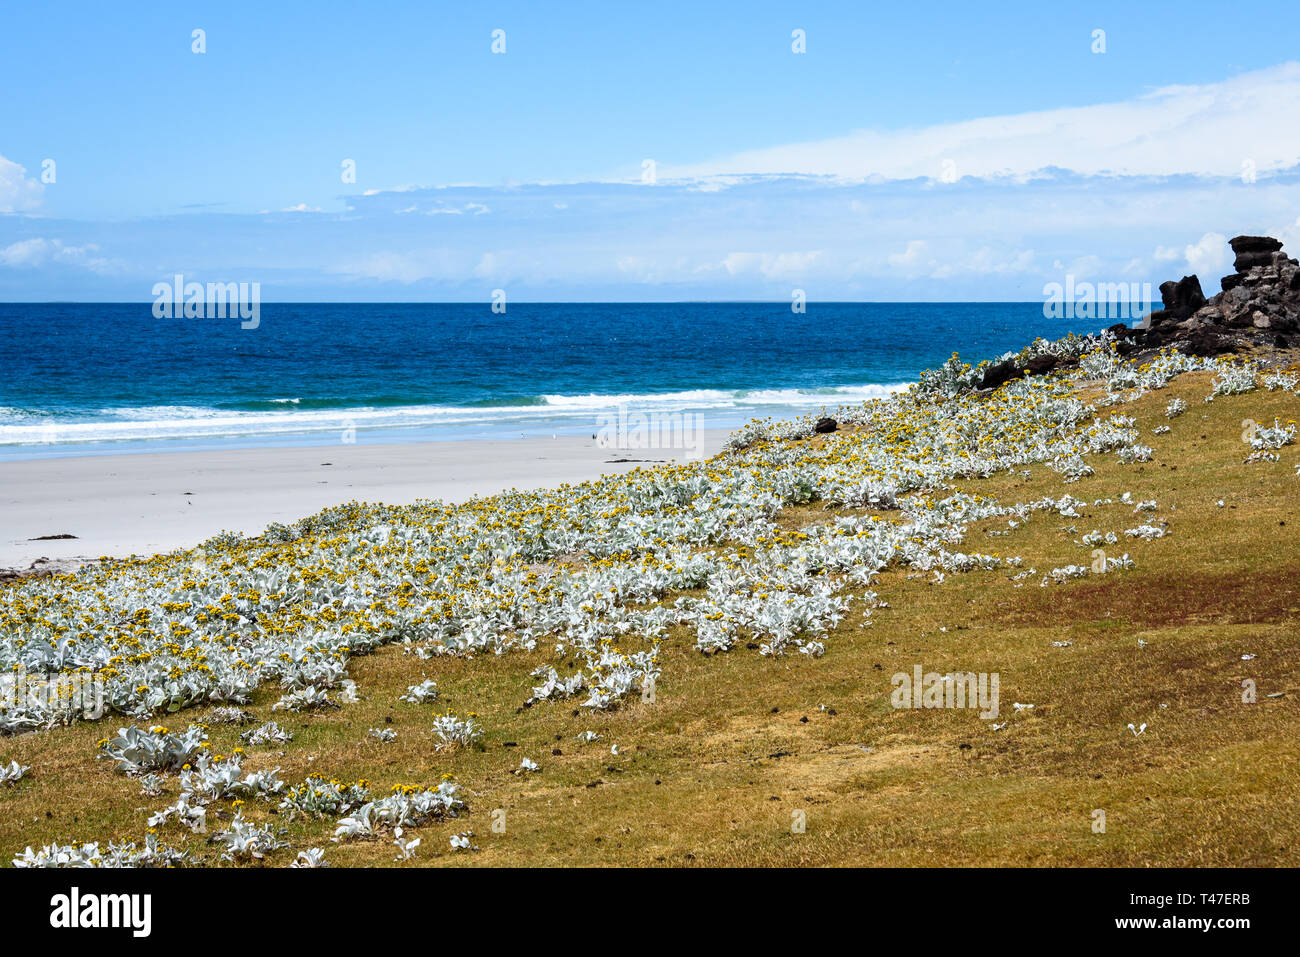 Reiseziel Landschaft, West Falkland Island Beach Szene mit gelben Meer Kohl auf grasbewachsenen Hügel, Falkland Inseln Stockfoto